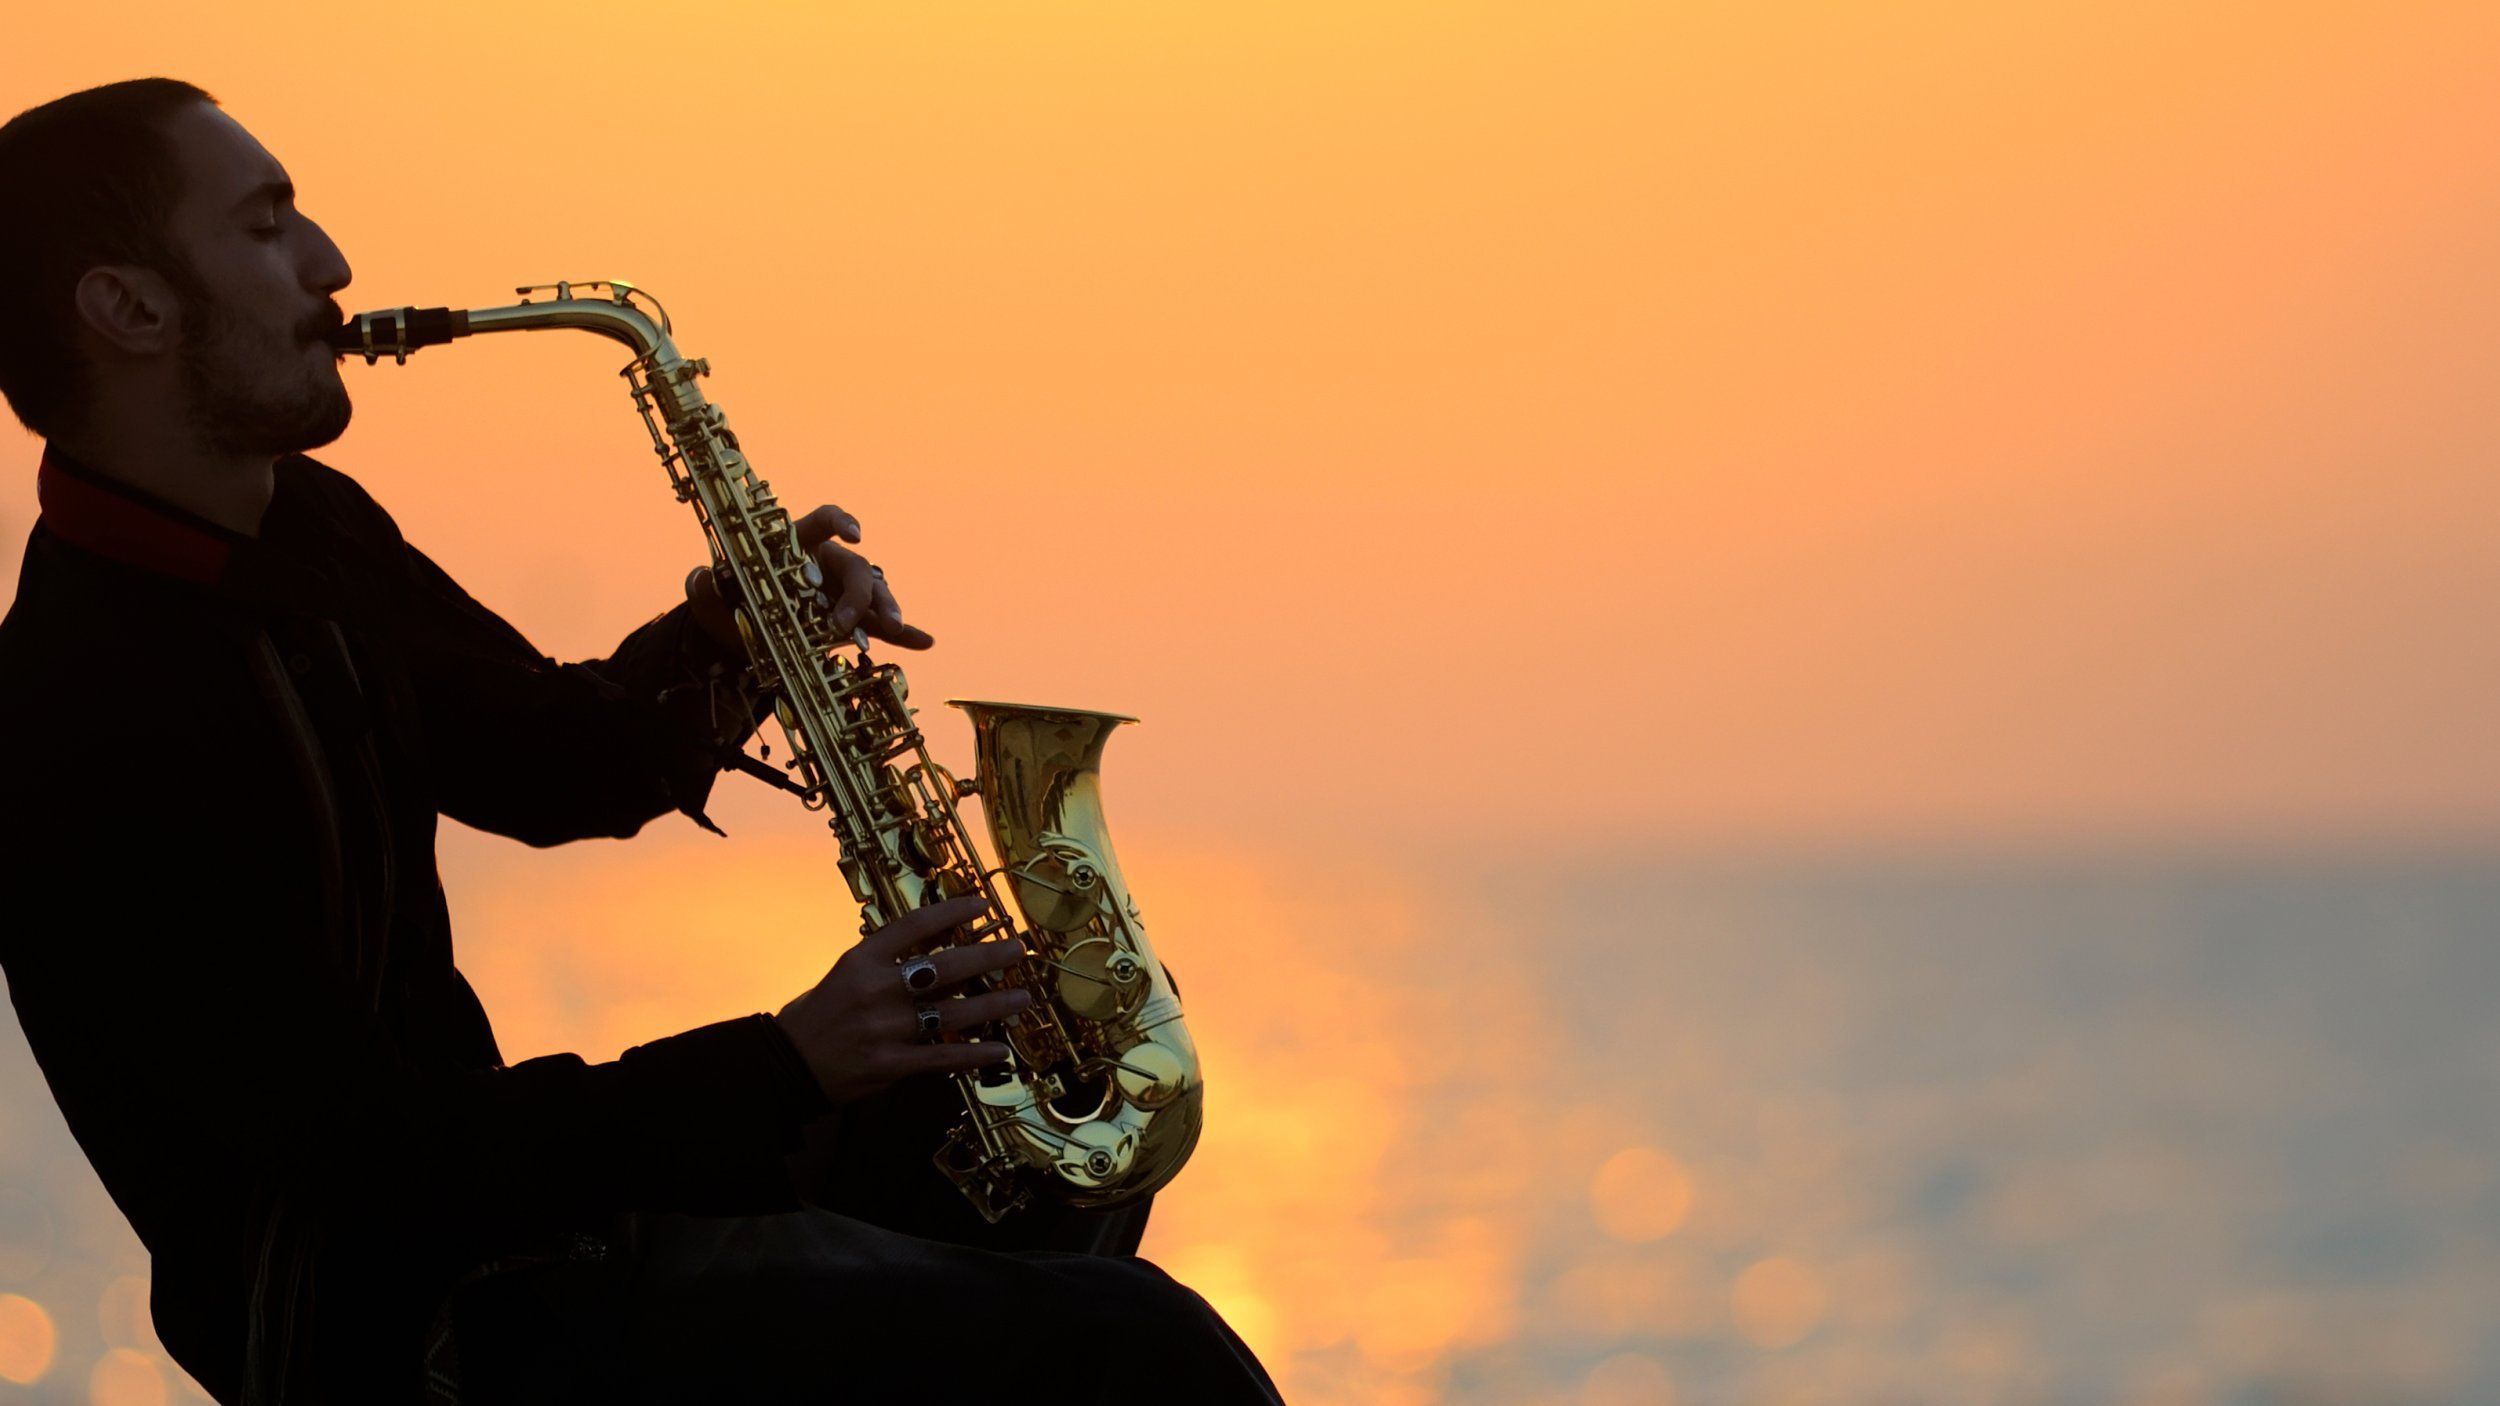 Playing saxophone. Саксофон. С днём рождения саксофанисту. Саксофонист на закате. Мужчина с саксофоном.